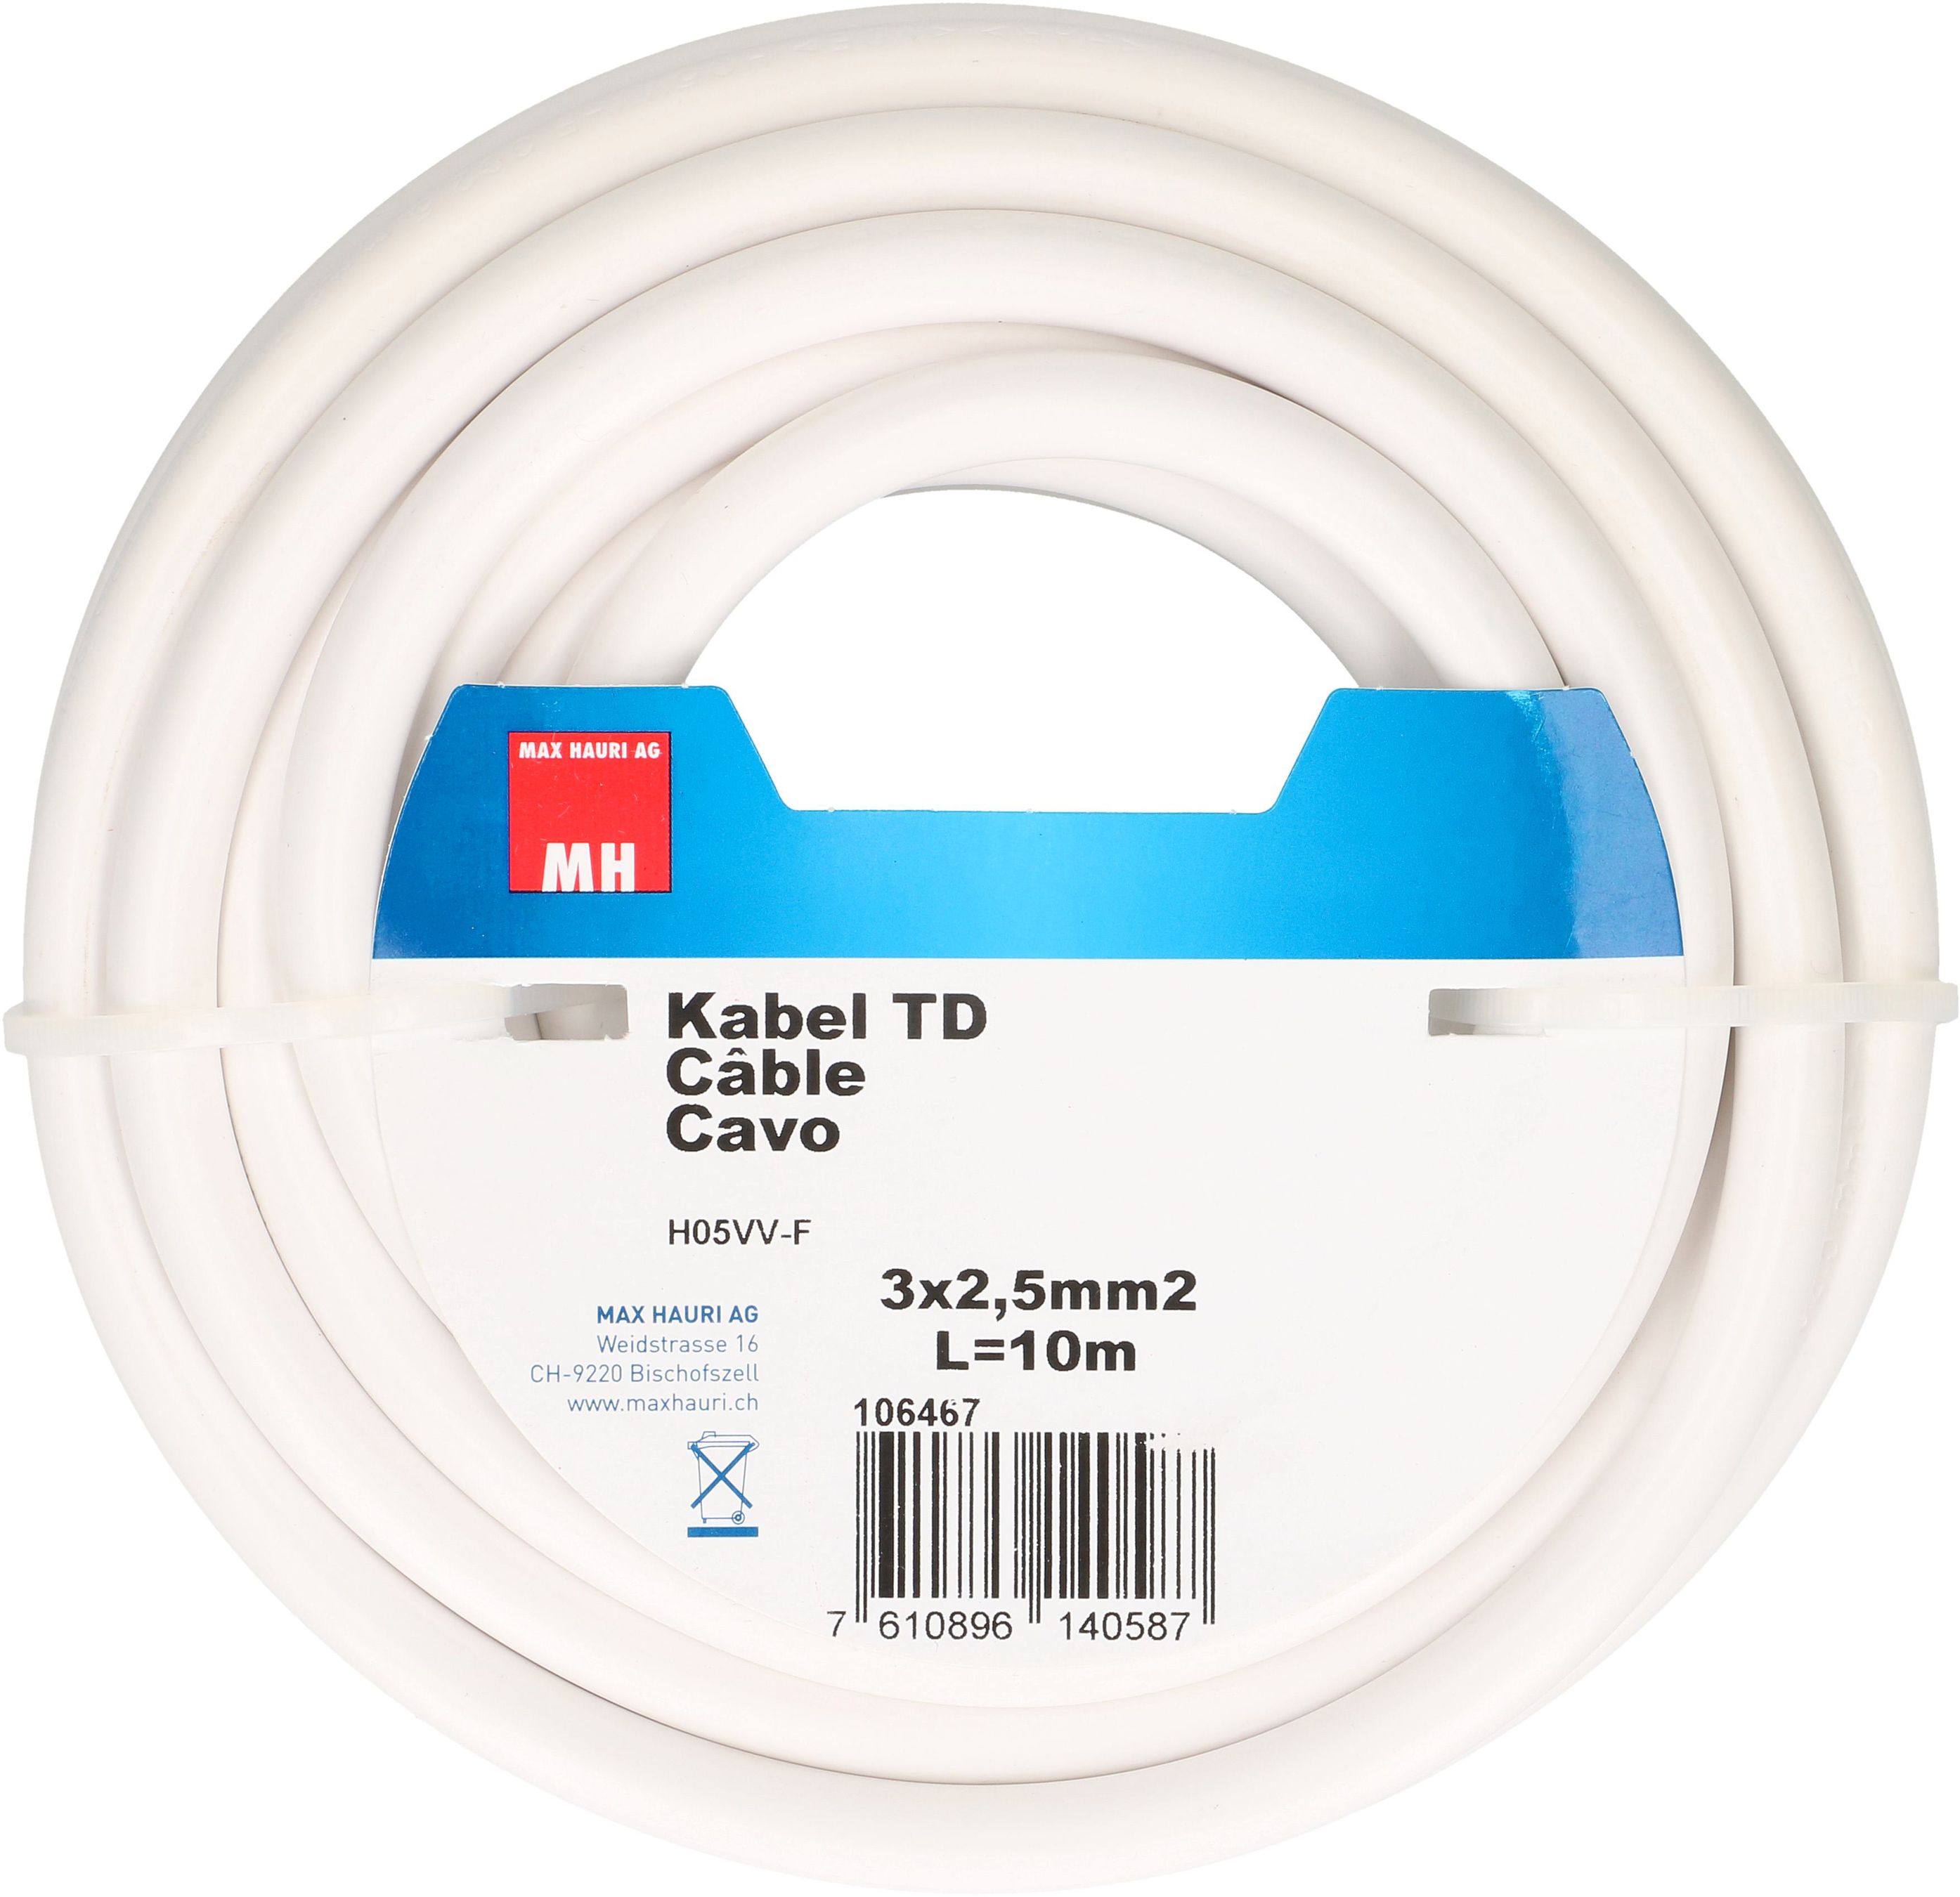 câble TD H05VV-F3G2.5 10m blanc